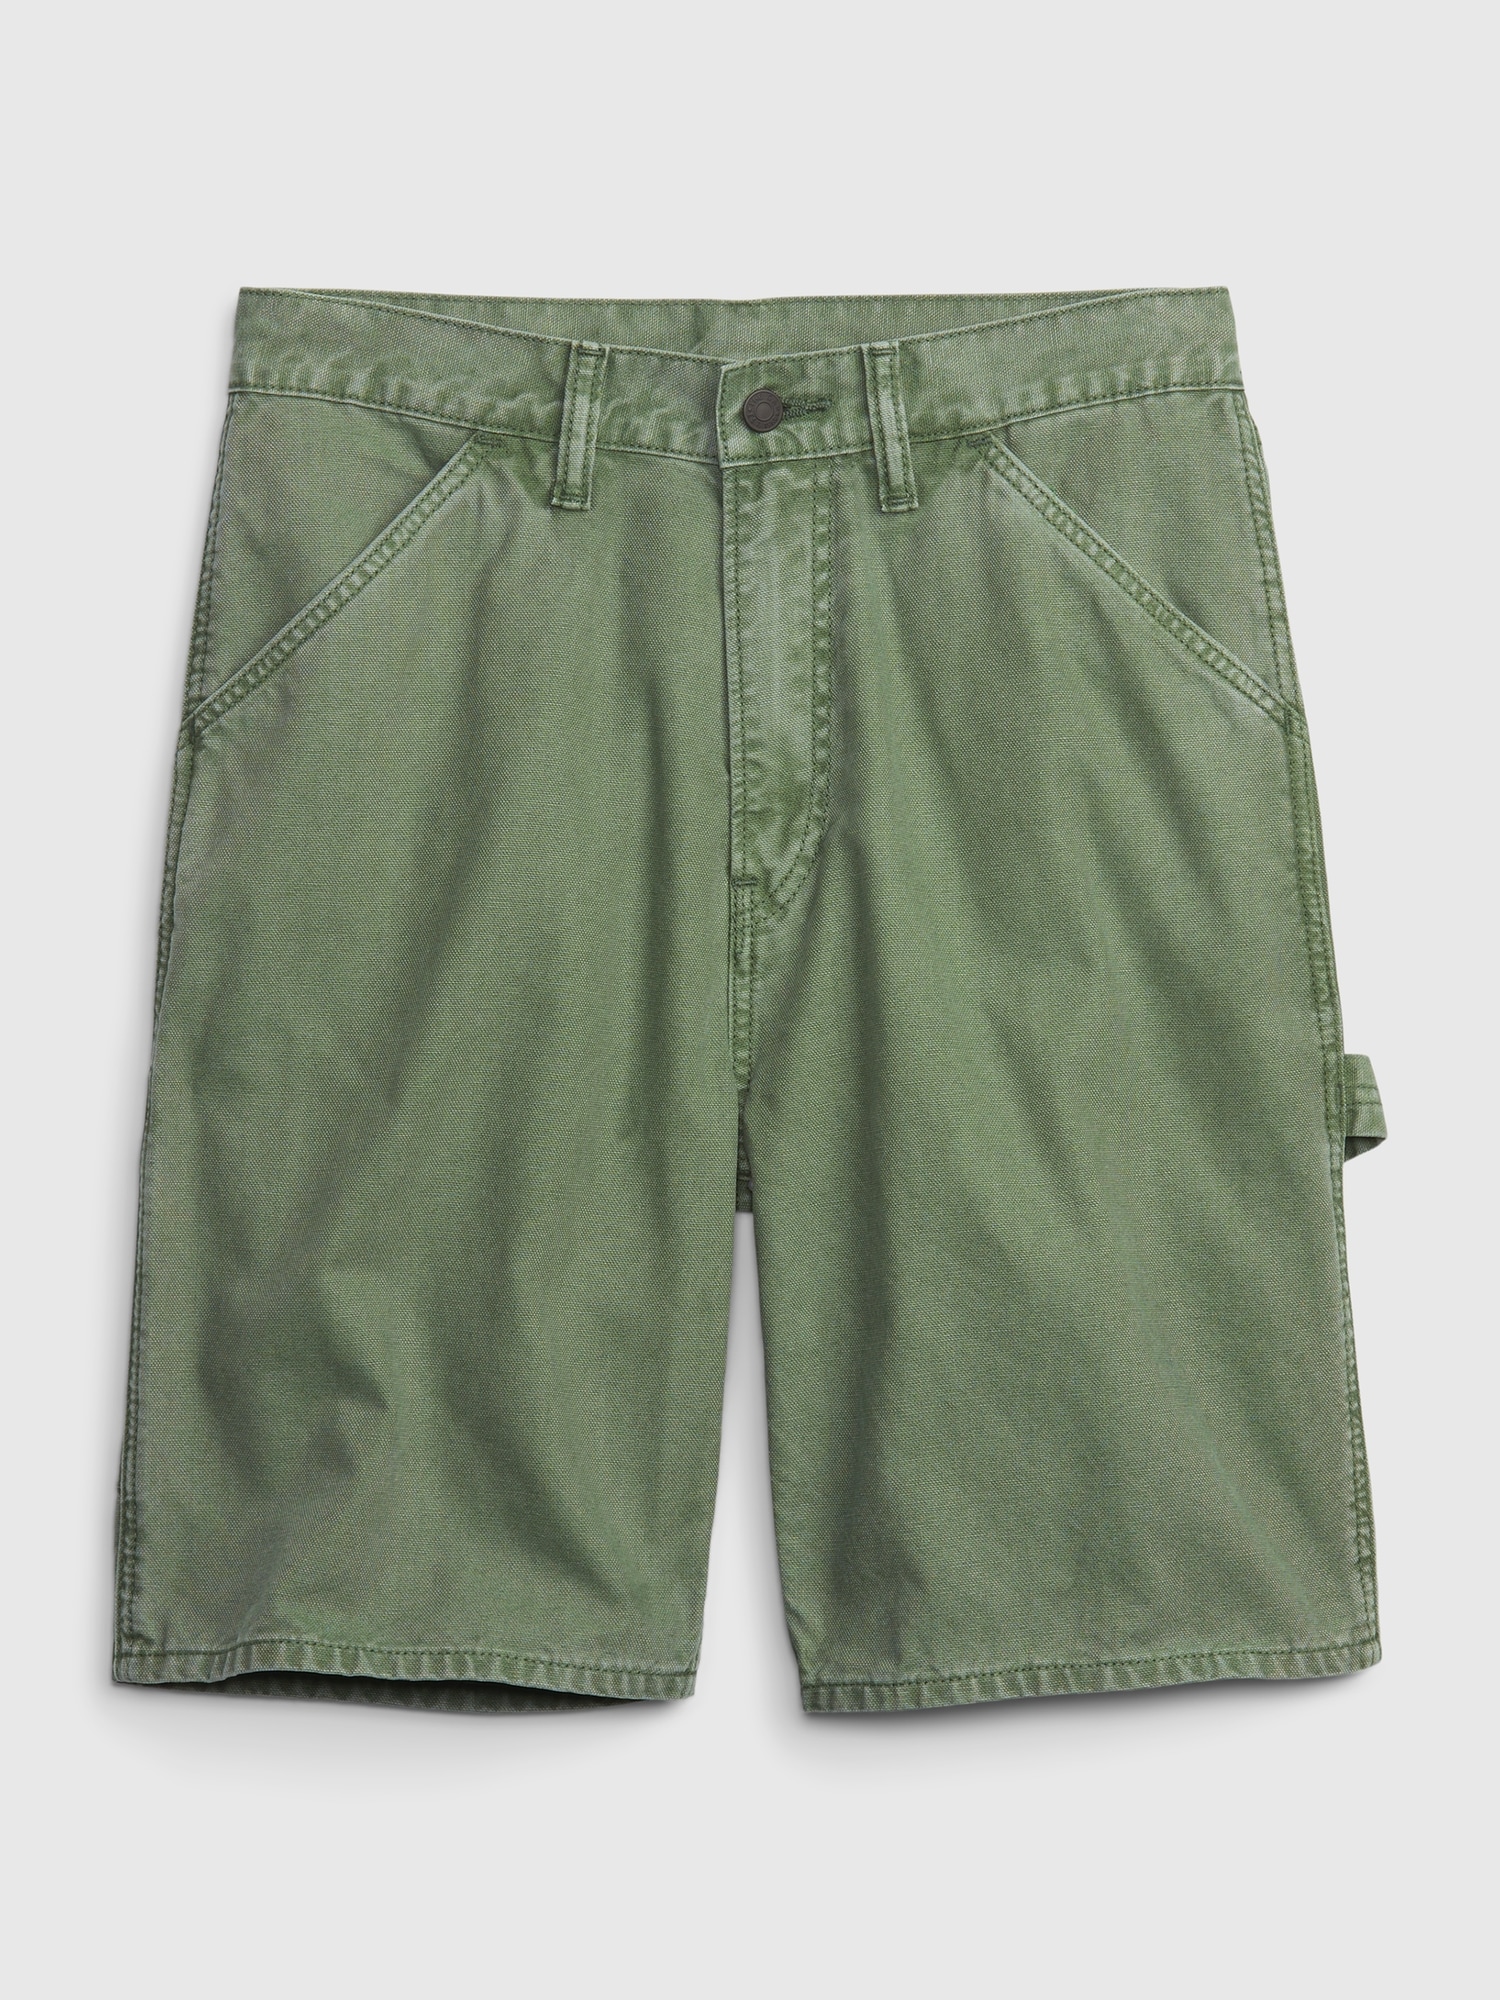 adviicd Cotton Shorts Men Men's Loose Fit Carpenter Short